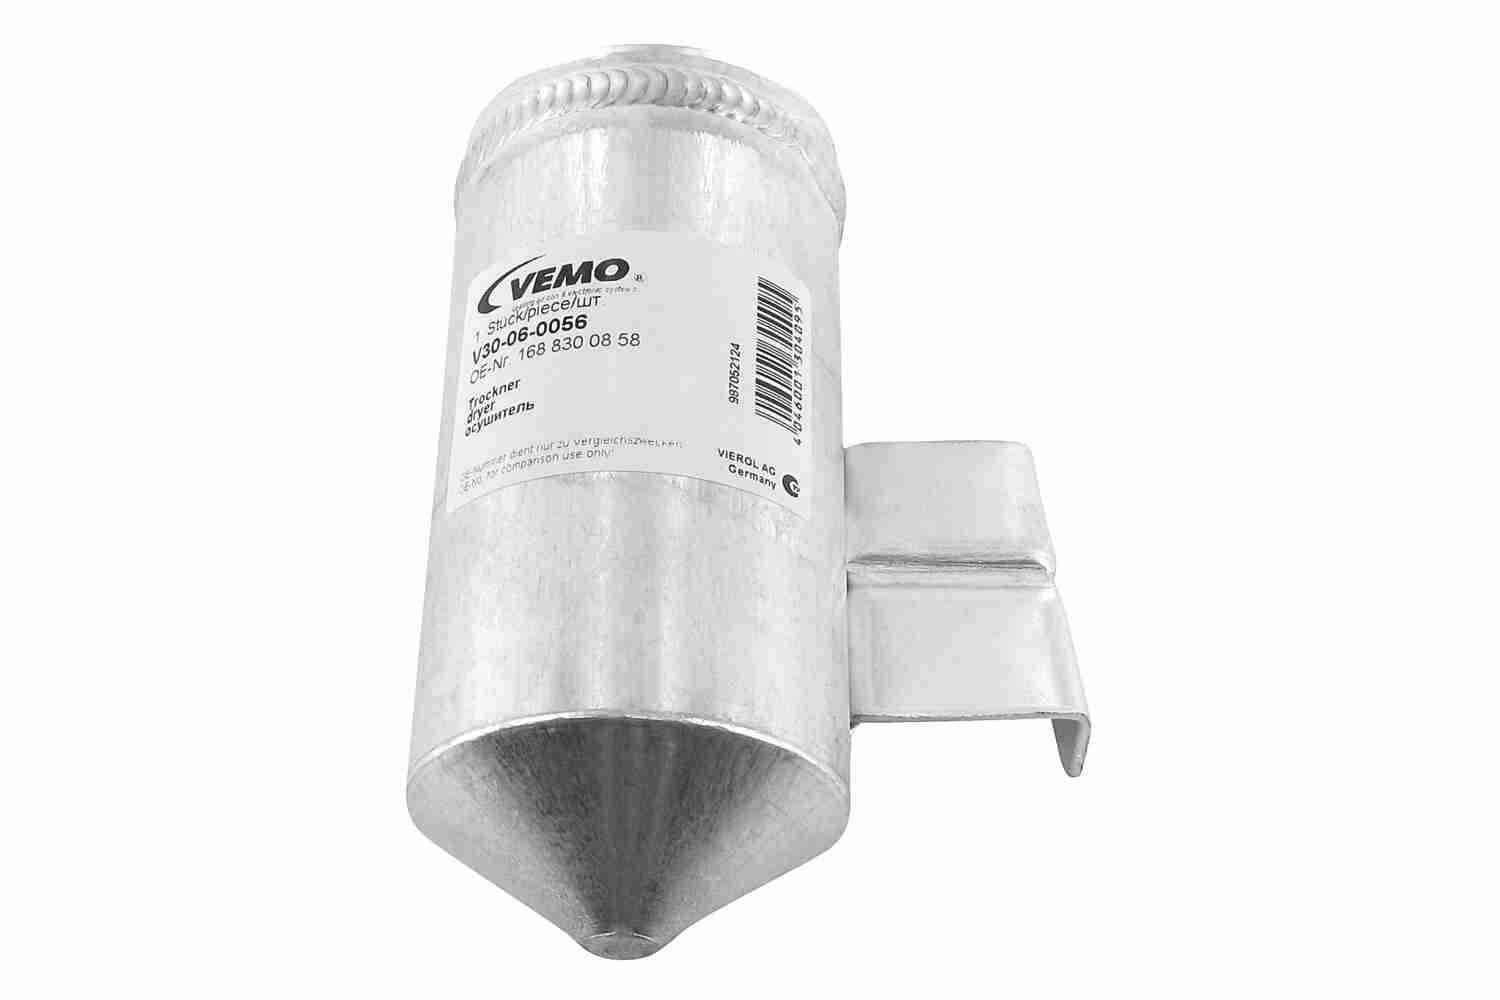 VEMO Original Quality Aluminium Receiver drier V30-06-0056 buy